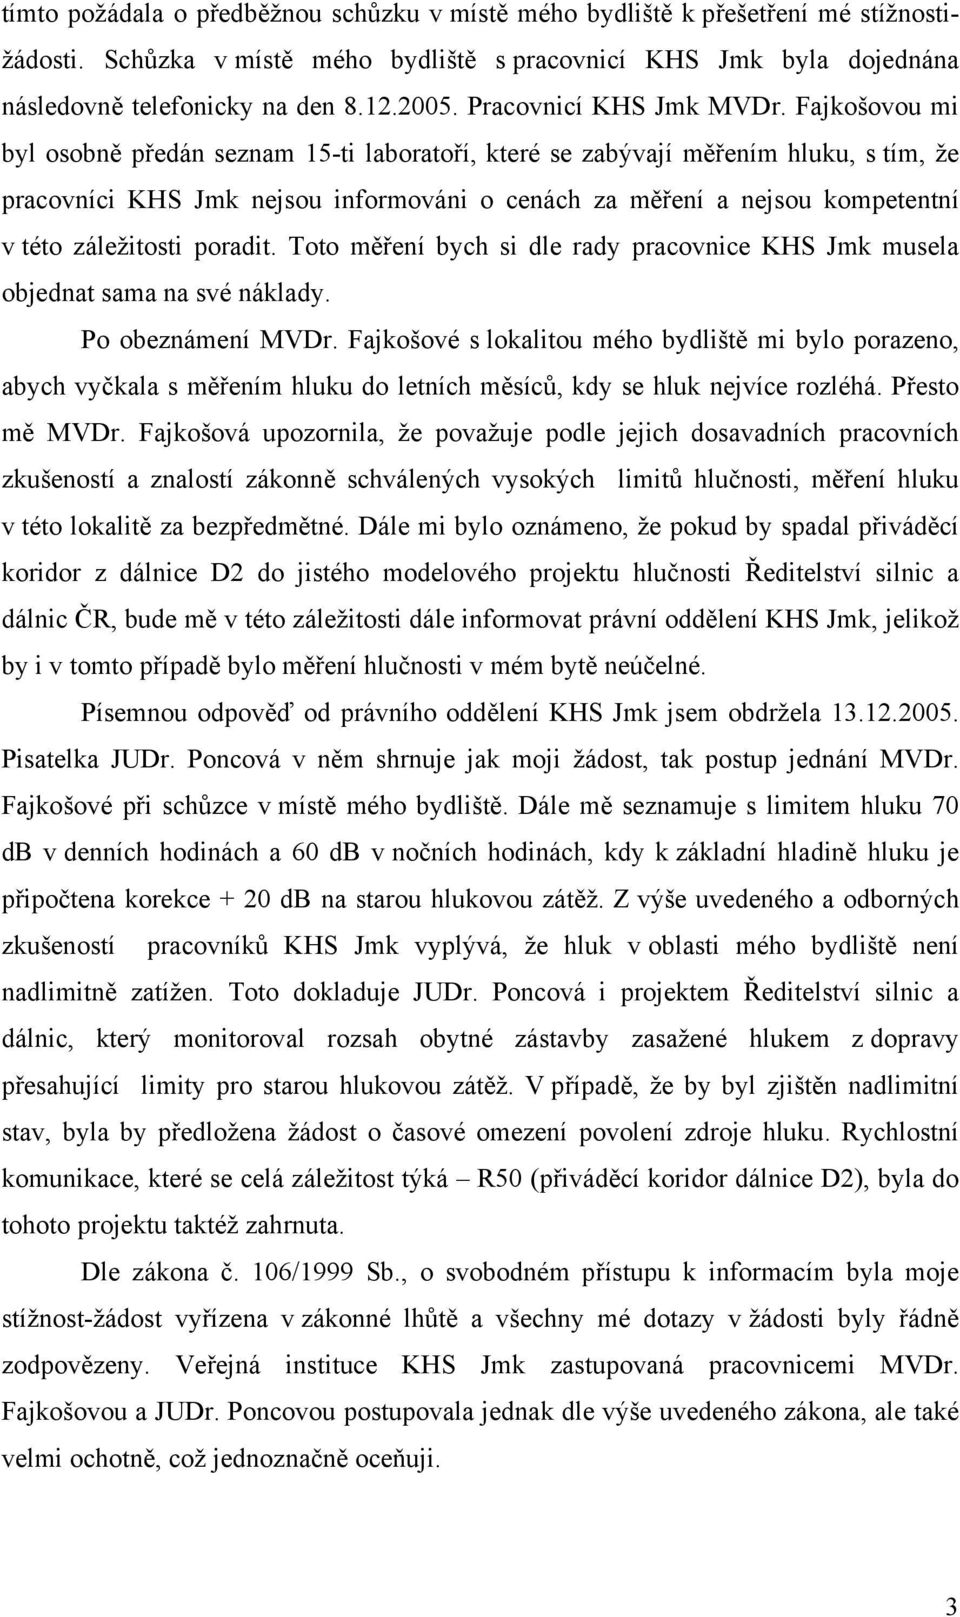 Fajkošovou mi byl osobně předán seznam 15-ti laboratoří, které se zabývají měřením hluku, s tím, že pracovníci KHS Jmk nejsou informováni o cenách za měření a nejsou kompetentní v této záležitosti